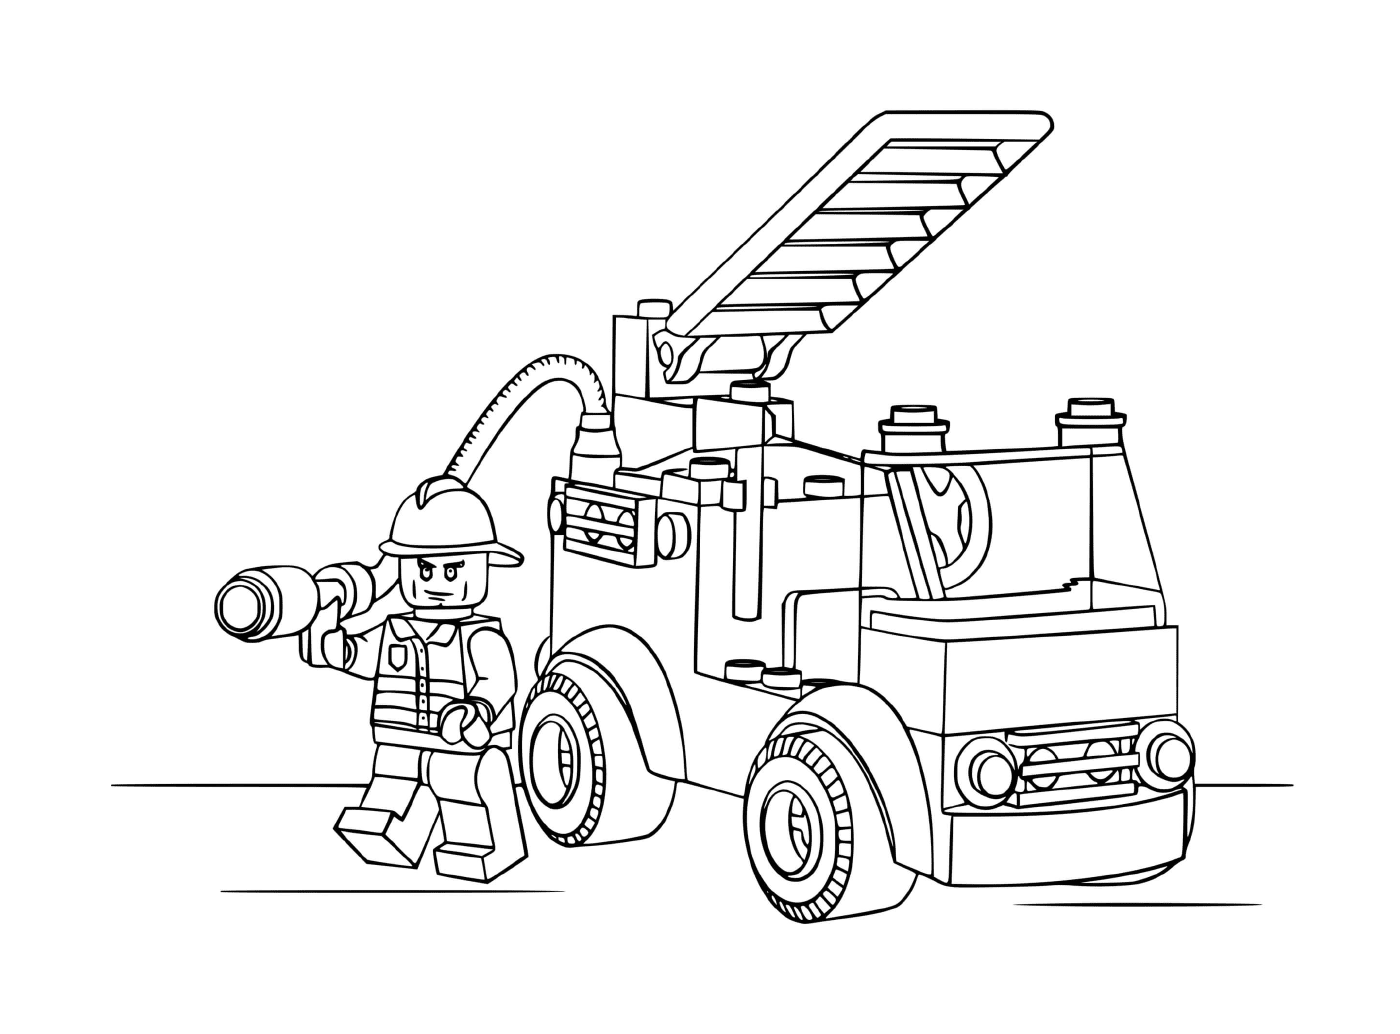  配有营救人员的Lego消防车 